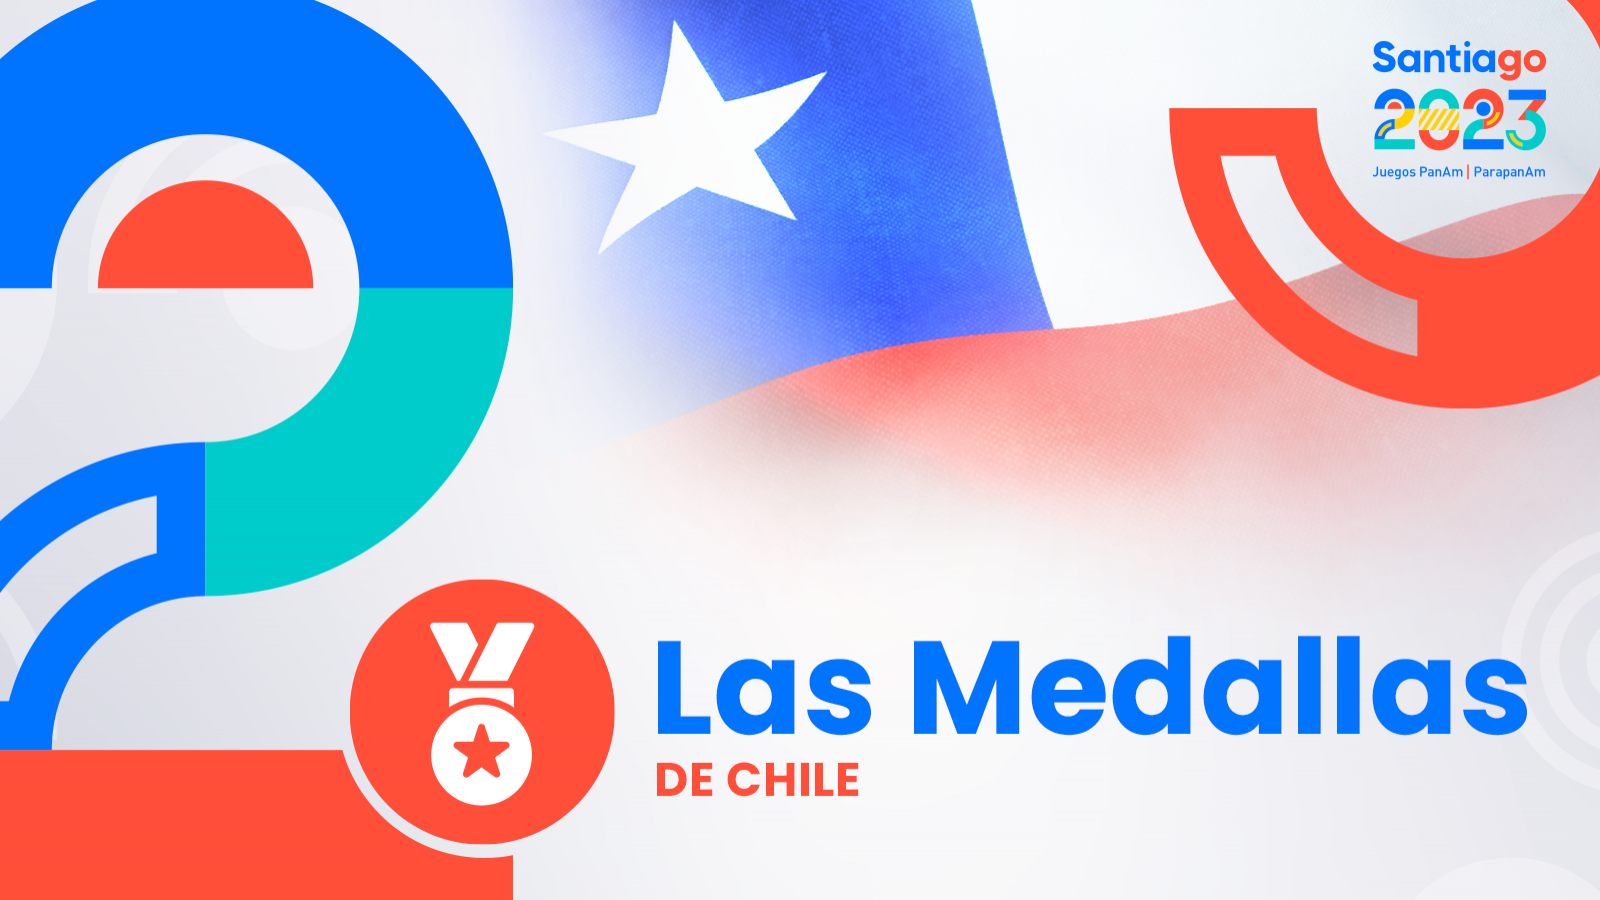 Medallas de oro de Chile en Panamericanos Santiago 2023